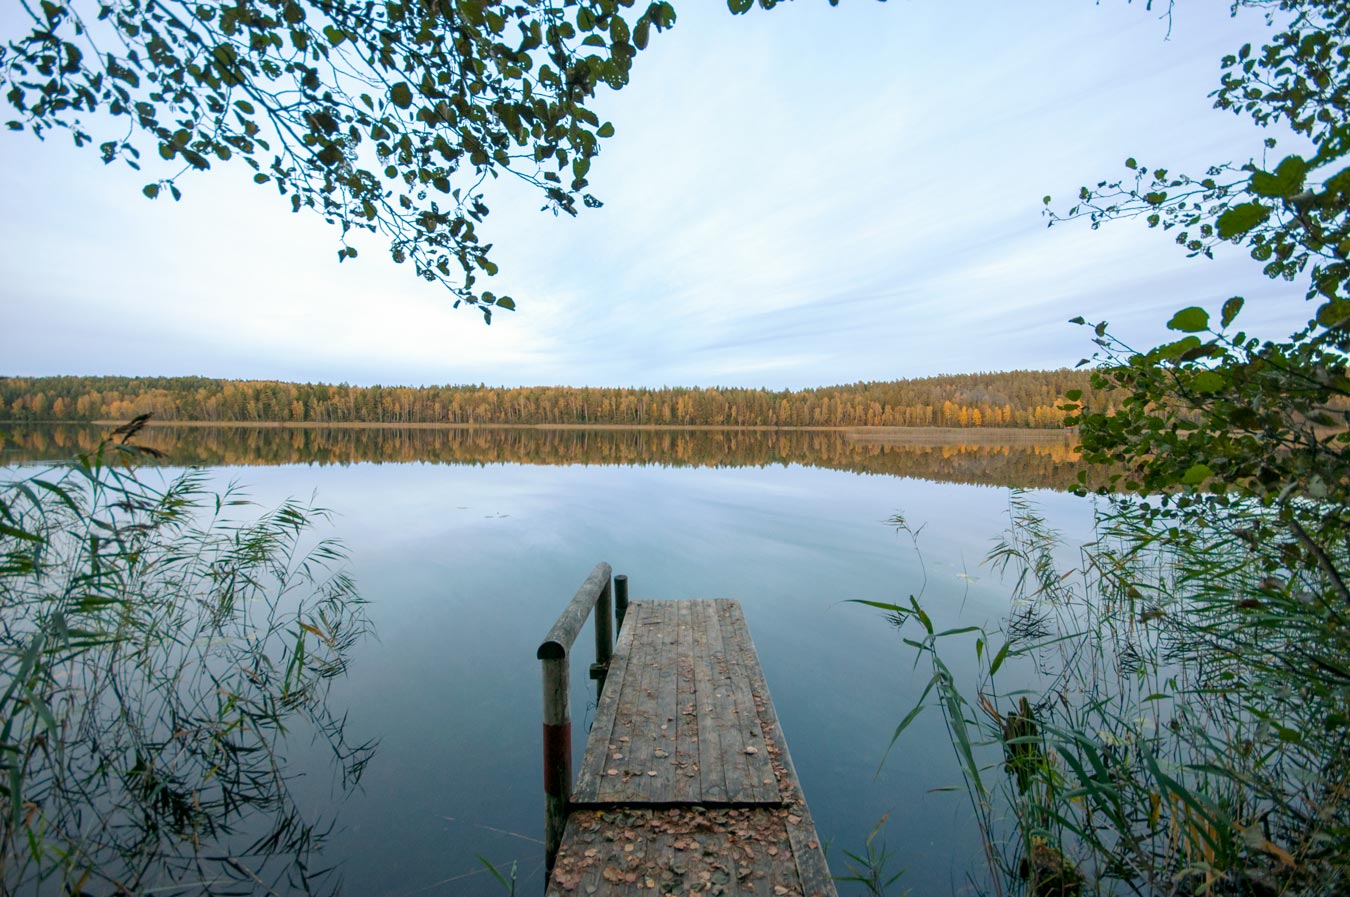 Озеро сергеевское пуховичский район